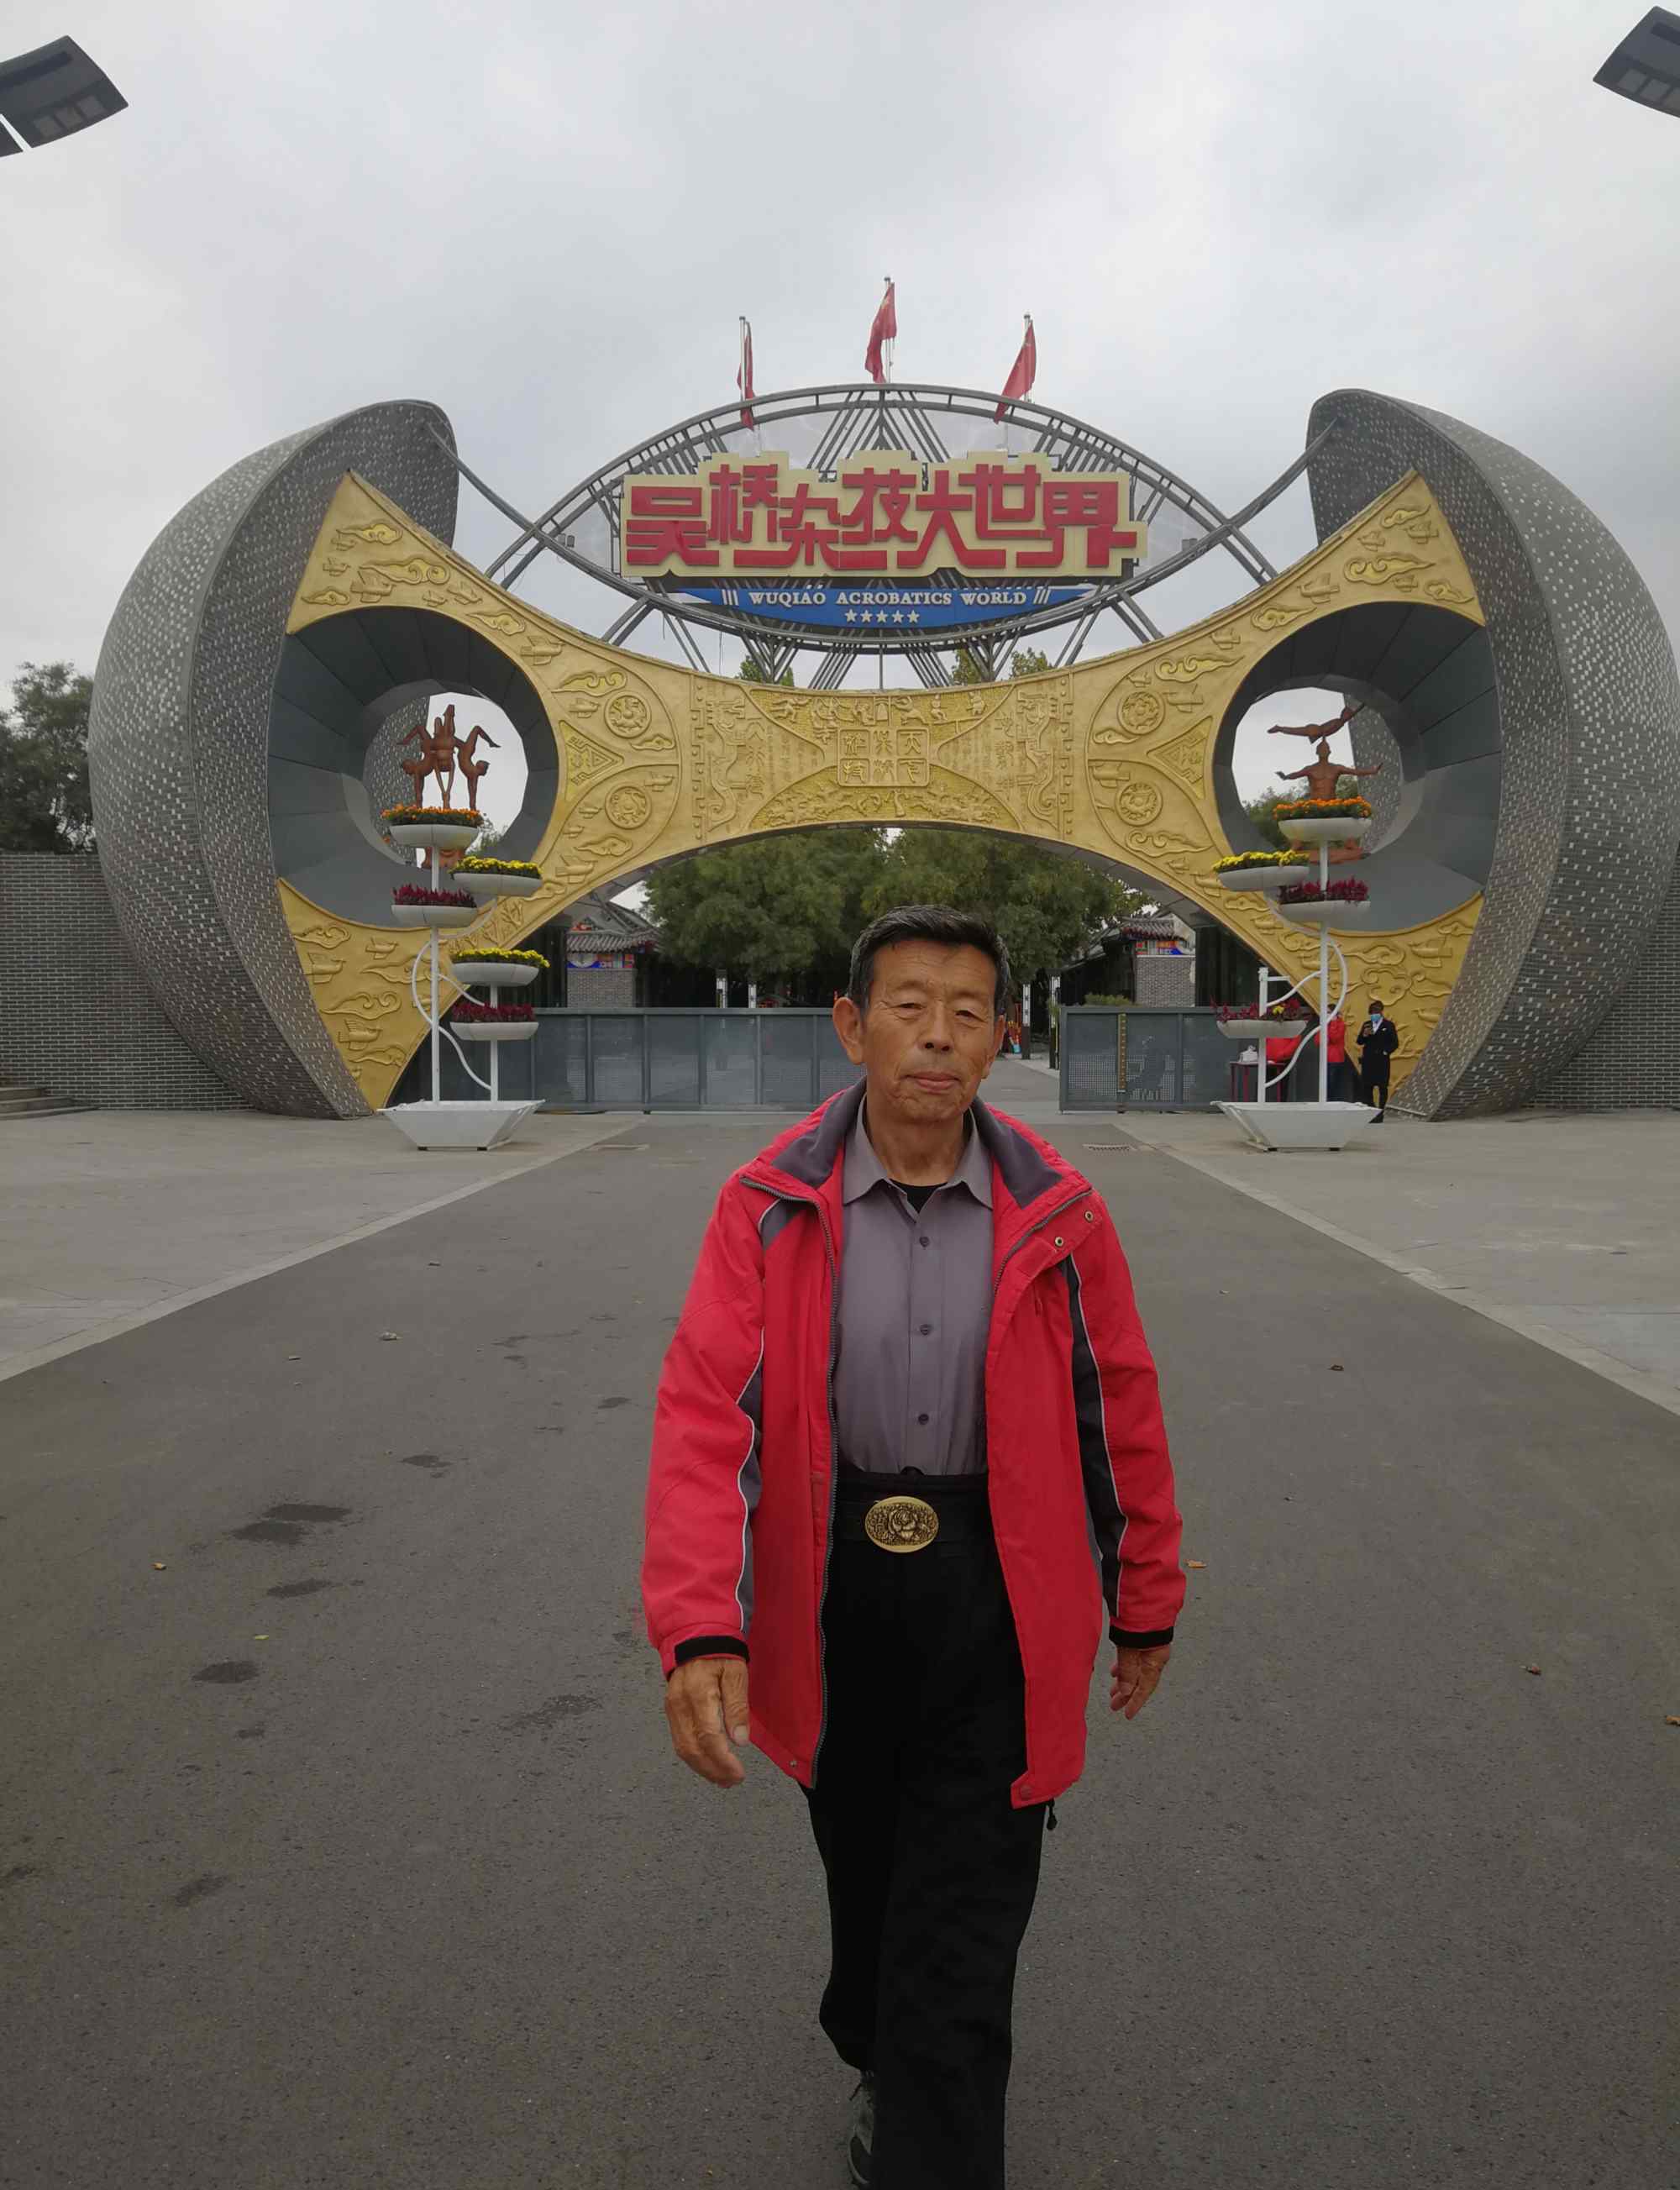 沧州吴桥杂技大世界 2020年10月14日在河北省沧州市吴桥杂技大世界景区。